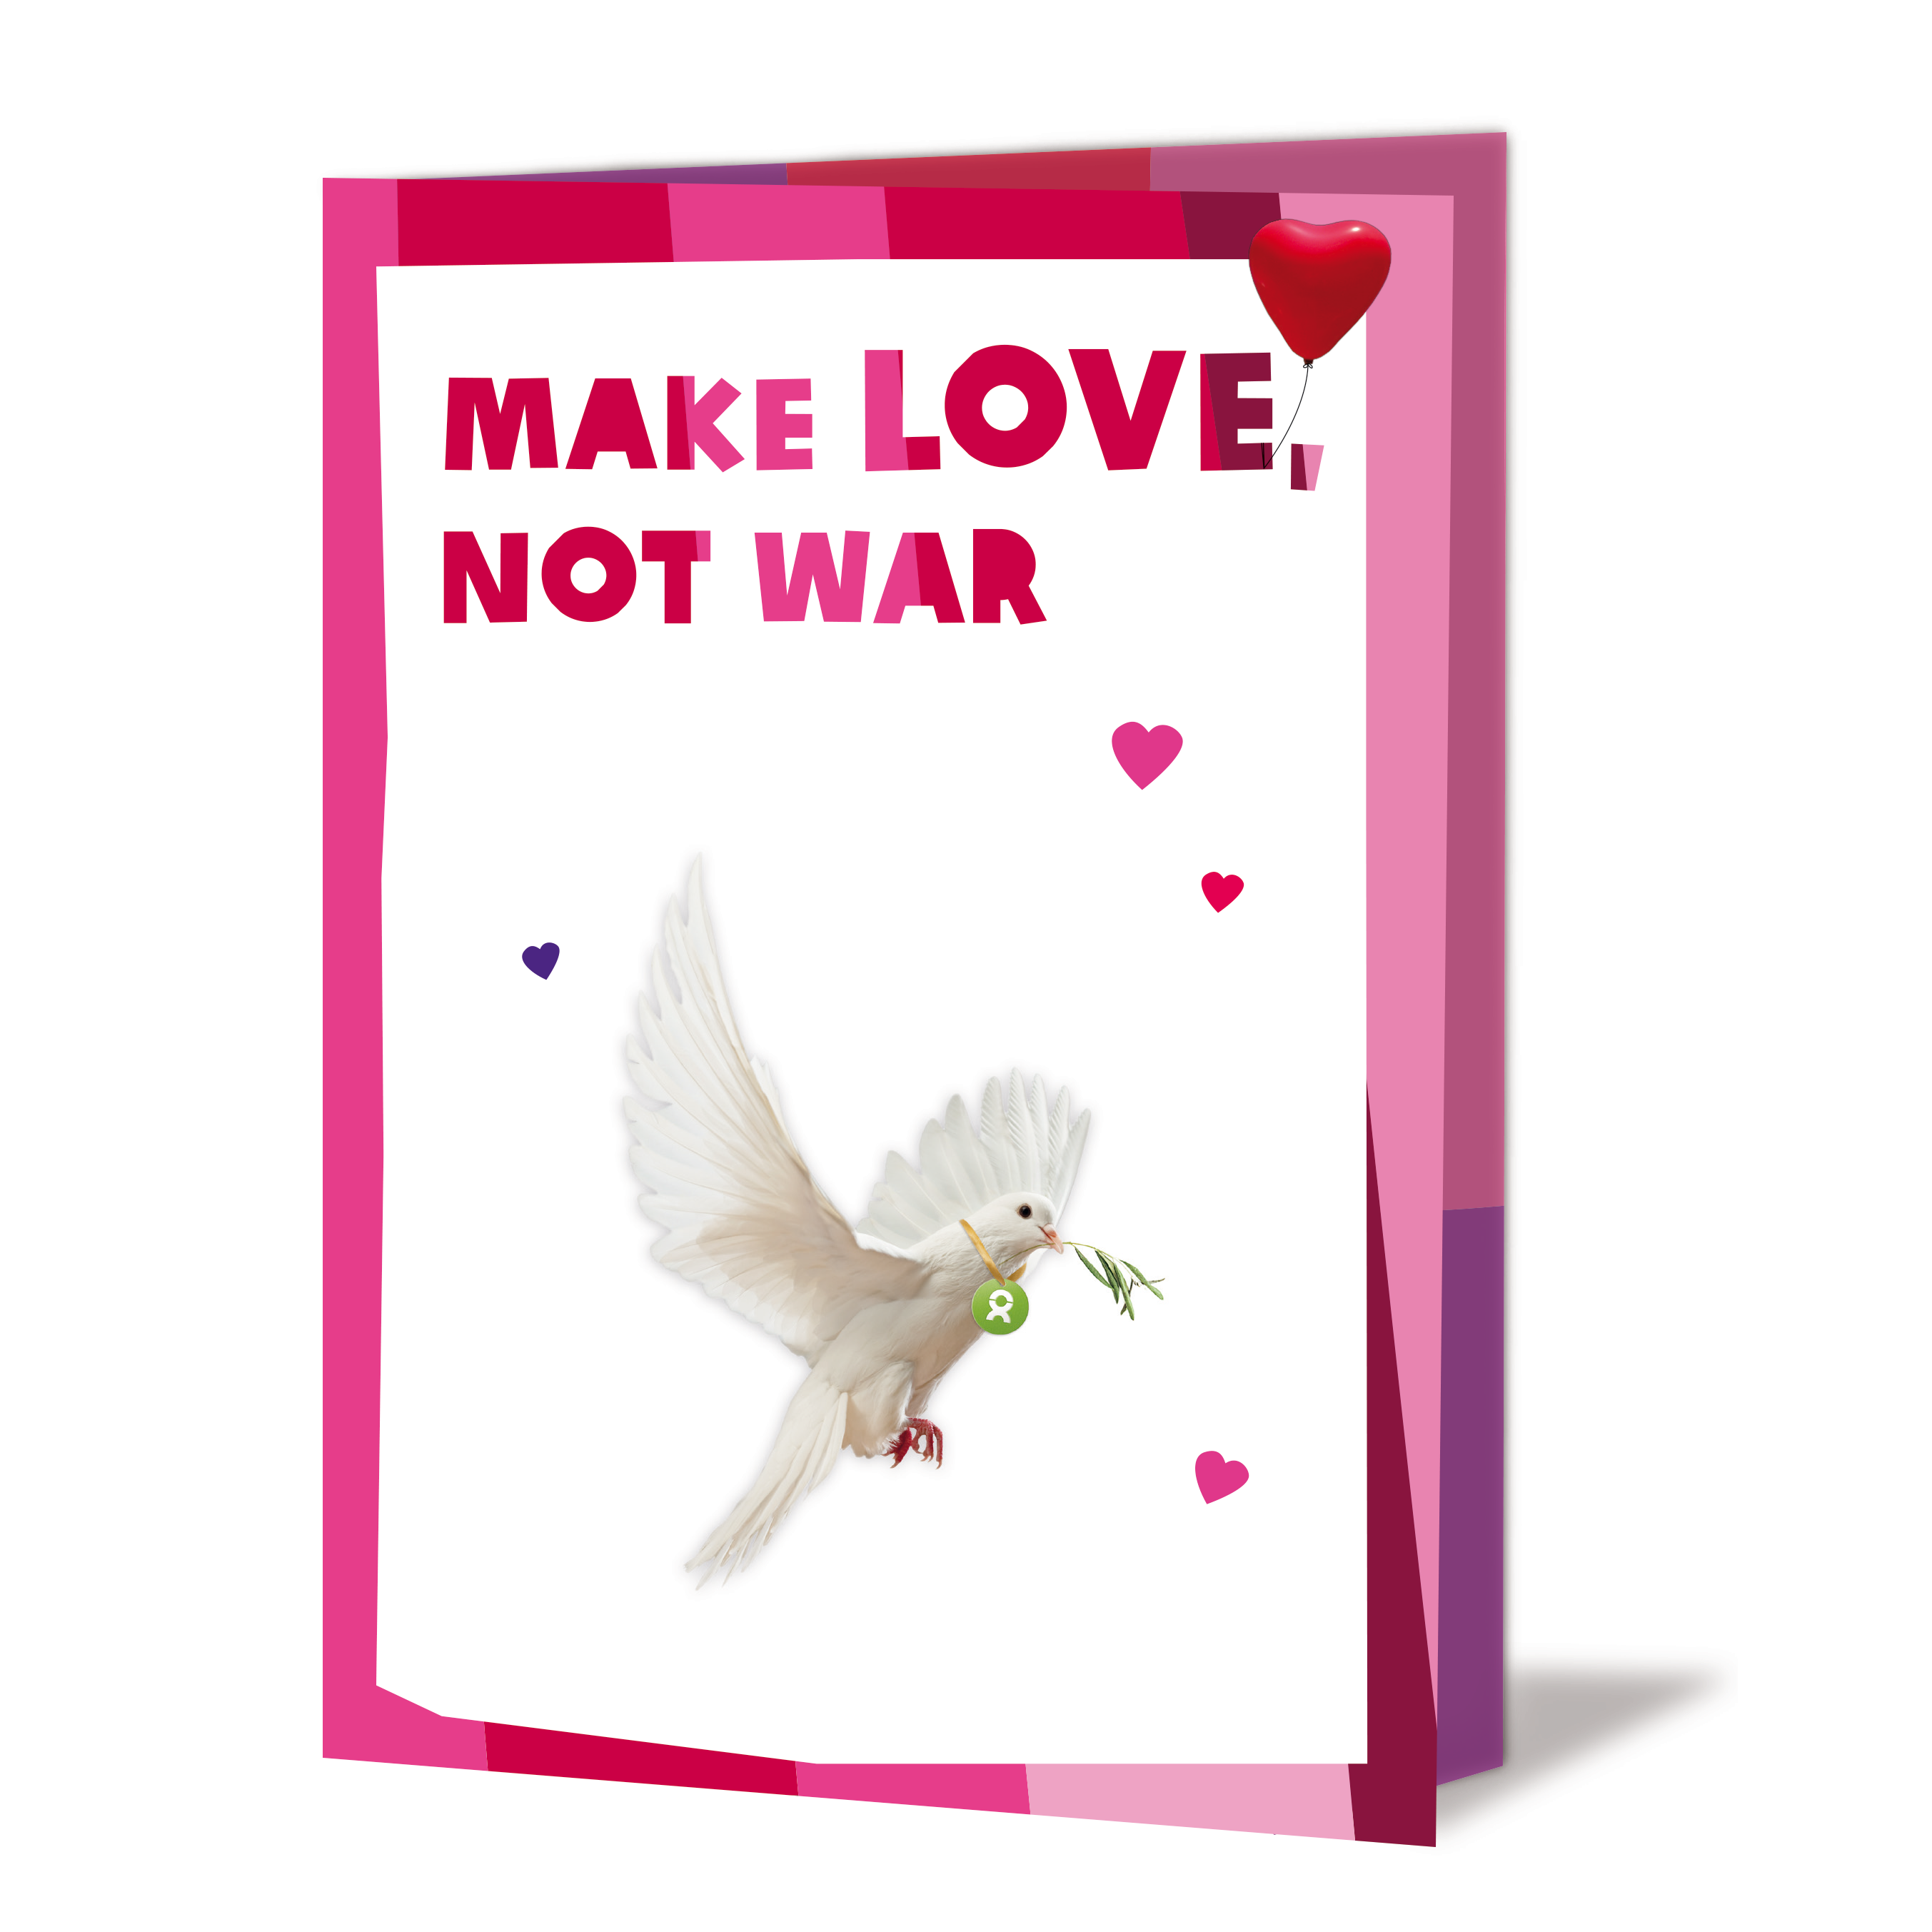 Geschenkkarte mit Grafik einer weißen Taube, die einen Olivenzwei im Schabel trägt. Die Aufschrift der Karte ist: Make love, not war